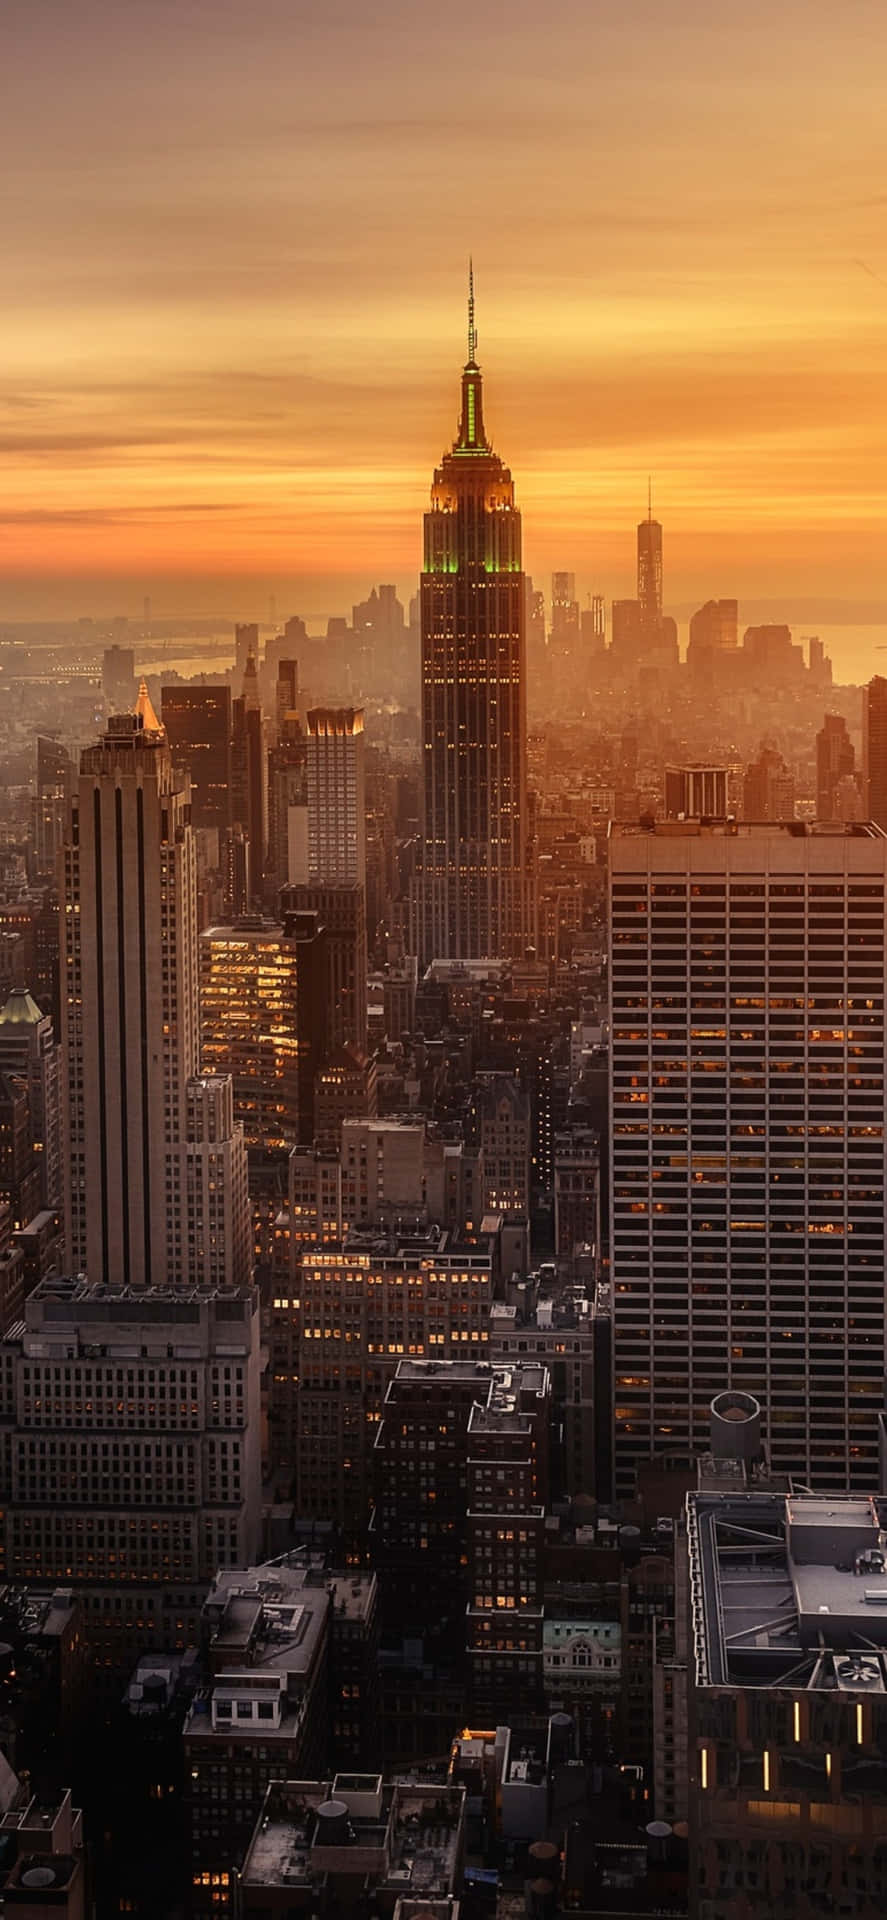 Fondode Pantalla Del Iphone X De La Ciudad De Nueva York Con El Empire State Building Al Atardecer.